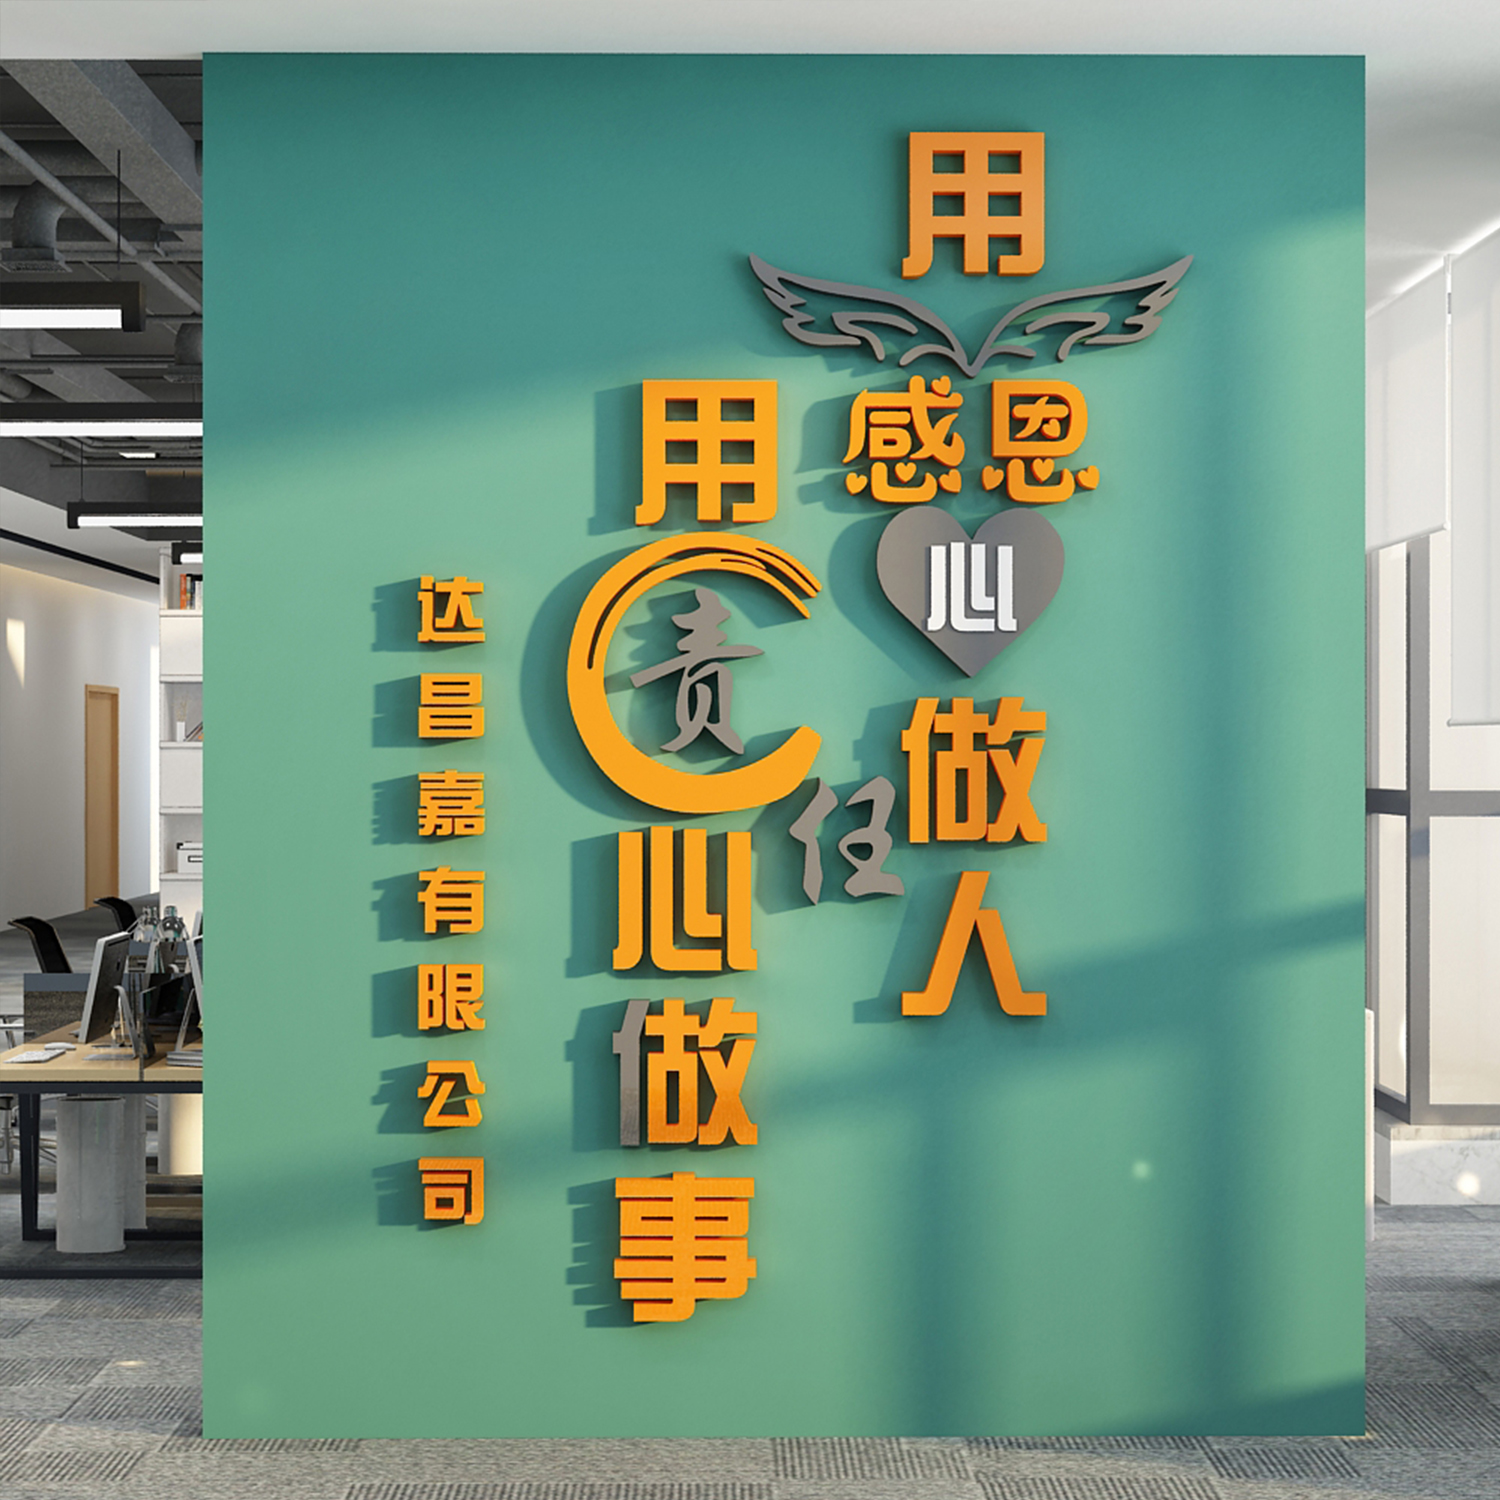 企业文化办公室墙面装饰创意公司背景团队励志标语贴进门形象布置 家居饰品 文化墙贴 原图主图